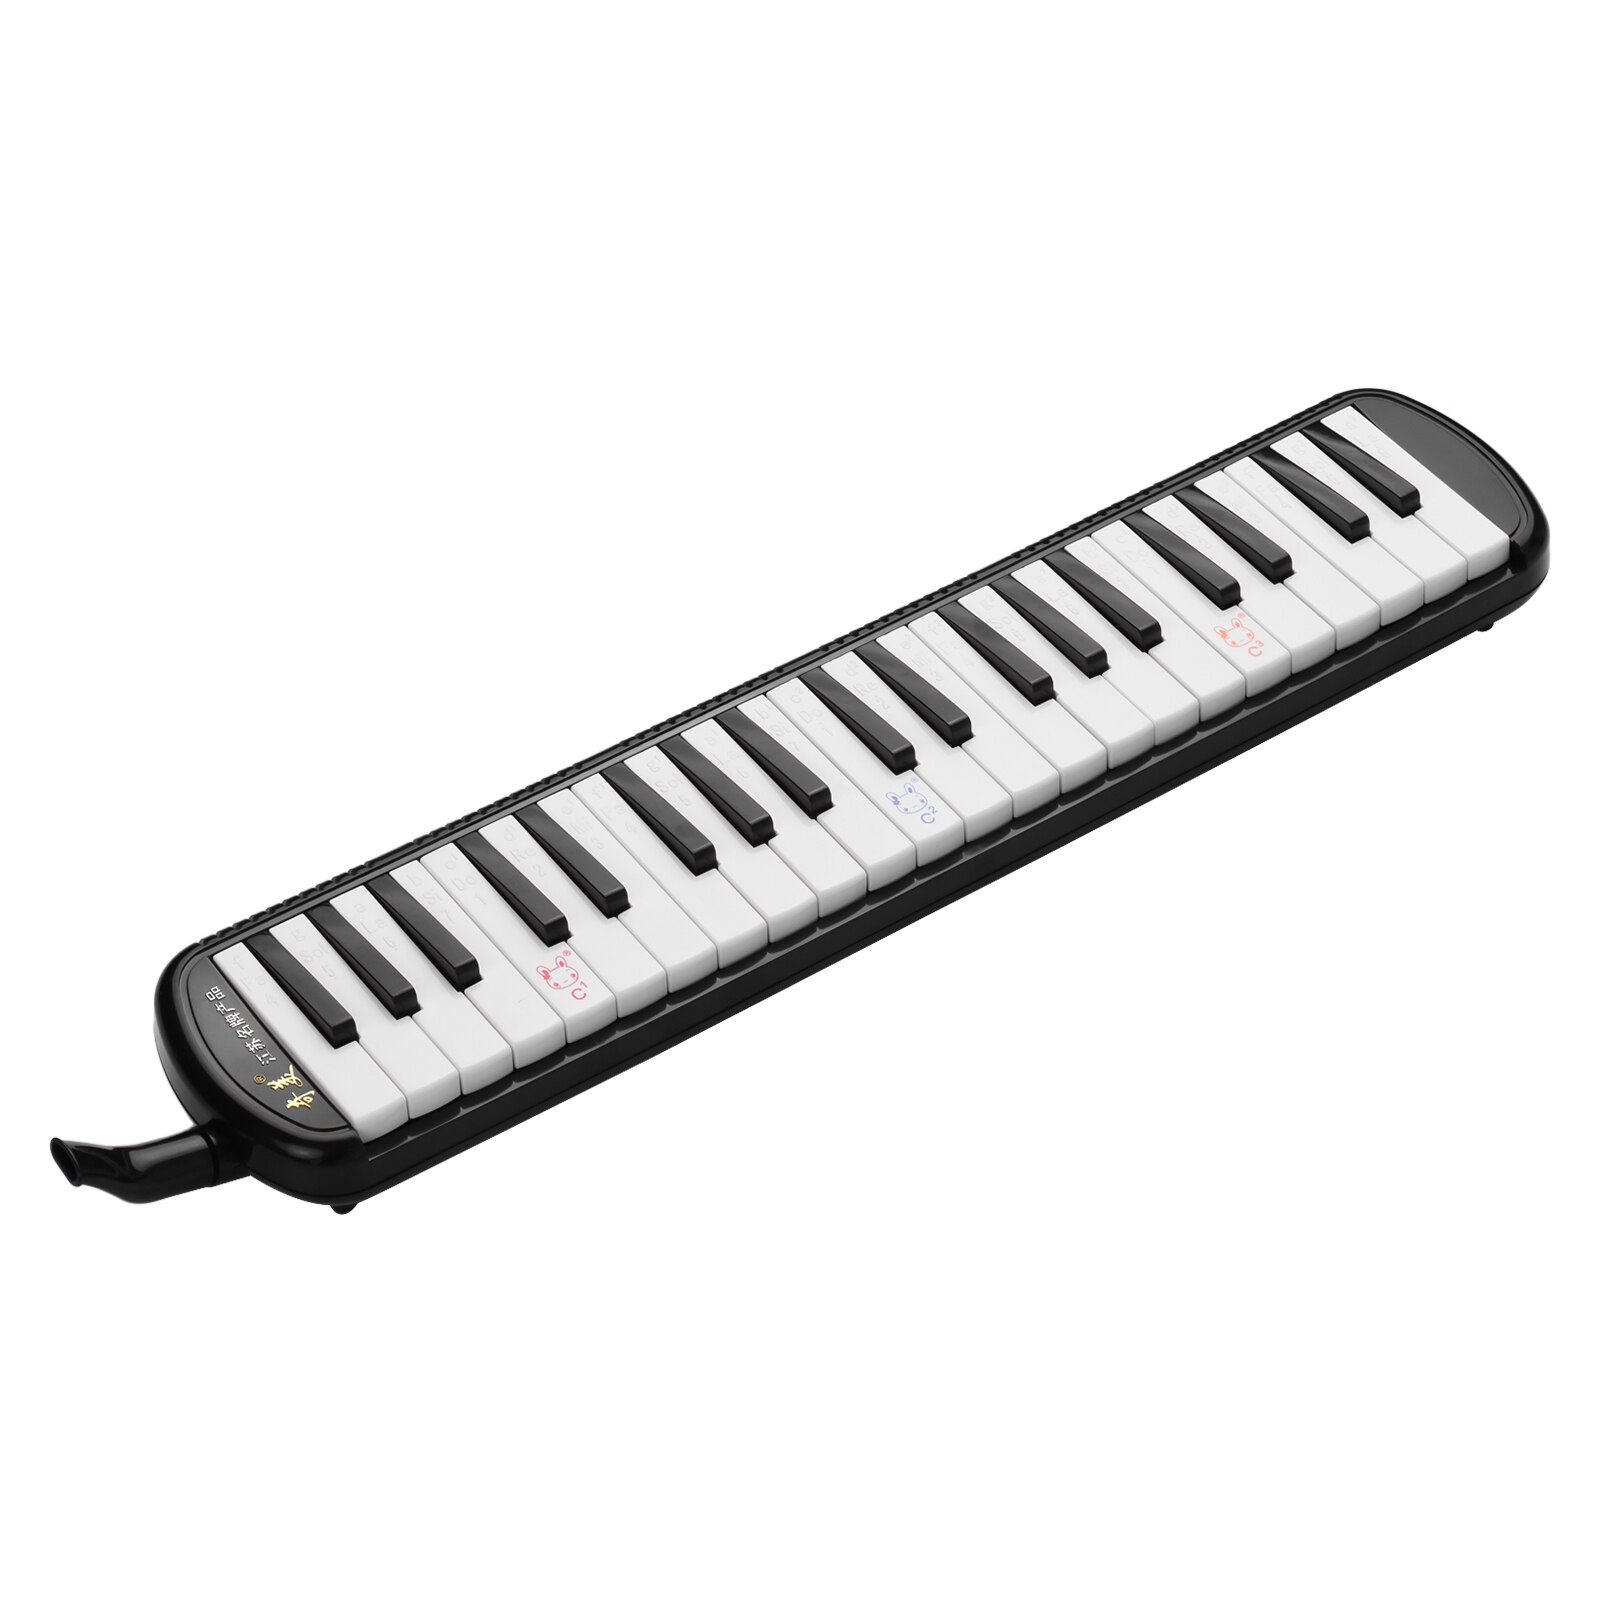 32 touches clavier électronique Piano pour enfants – Grandado